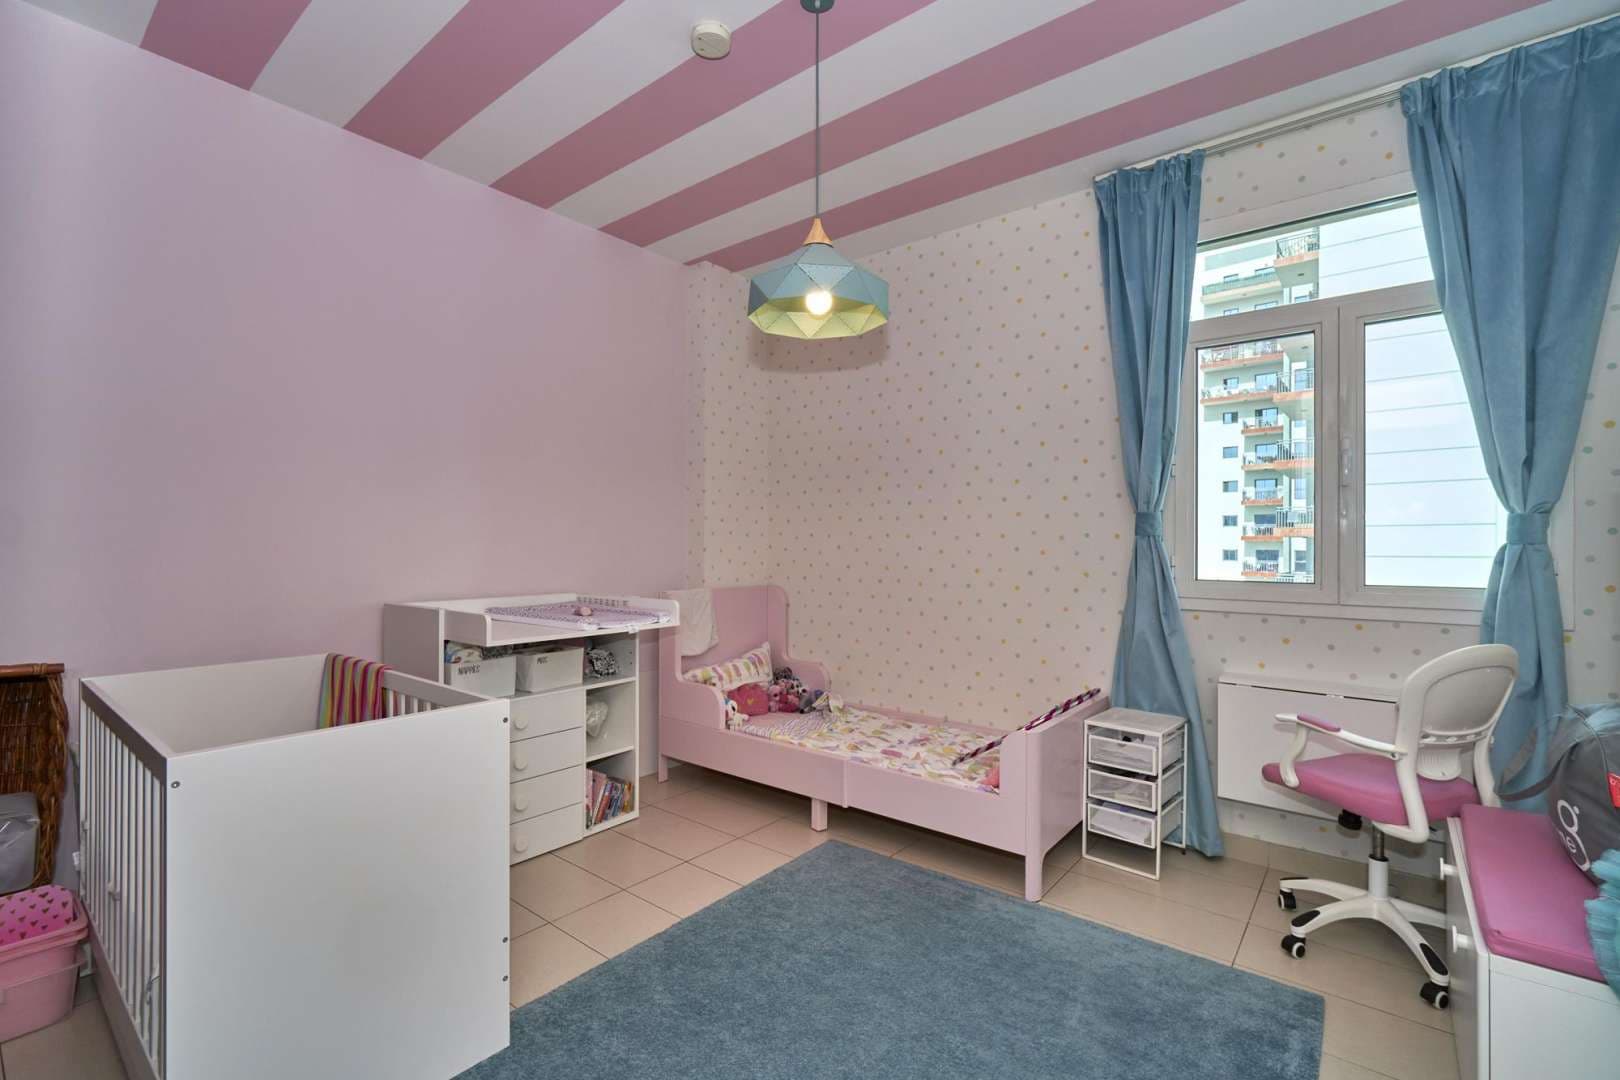 3 Bedroom Apartment For Sale Masakin Al Furjan Lp05756 5bc10850ad8f180.jpg